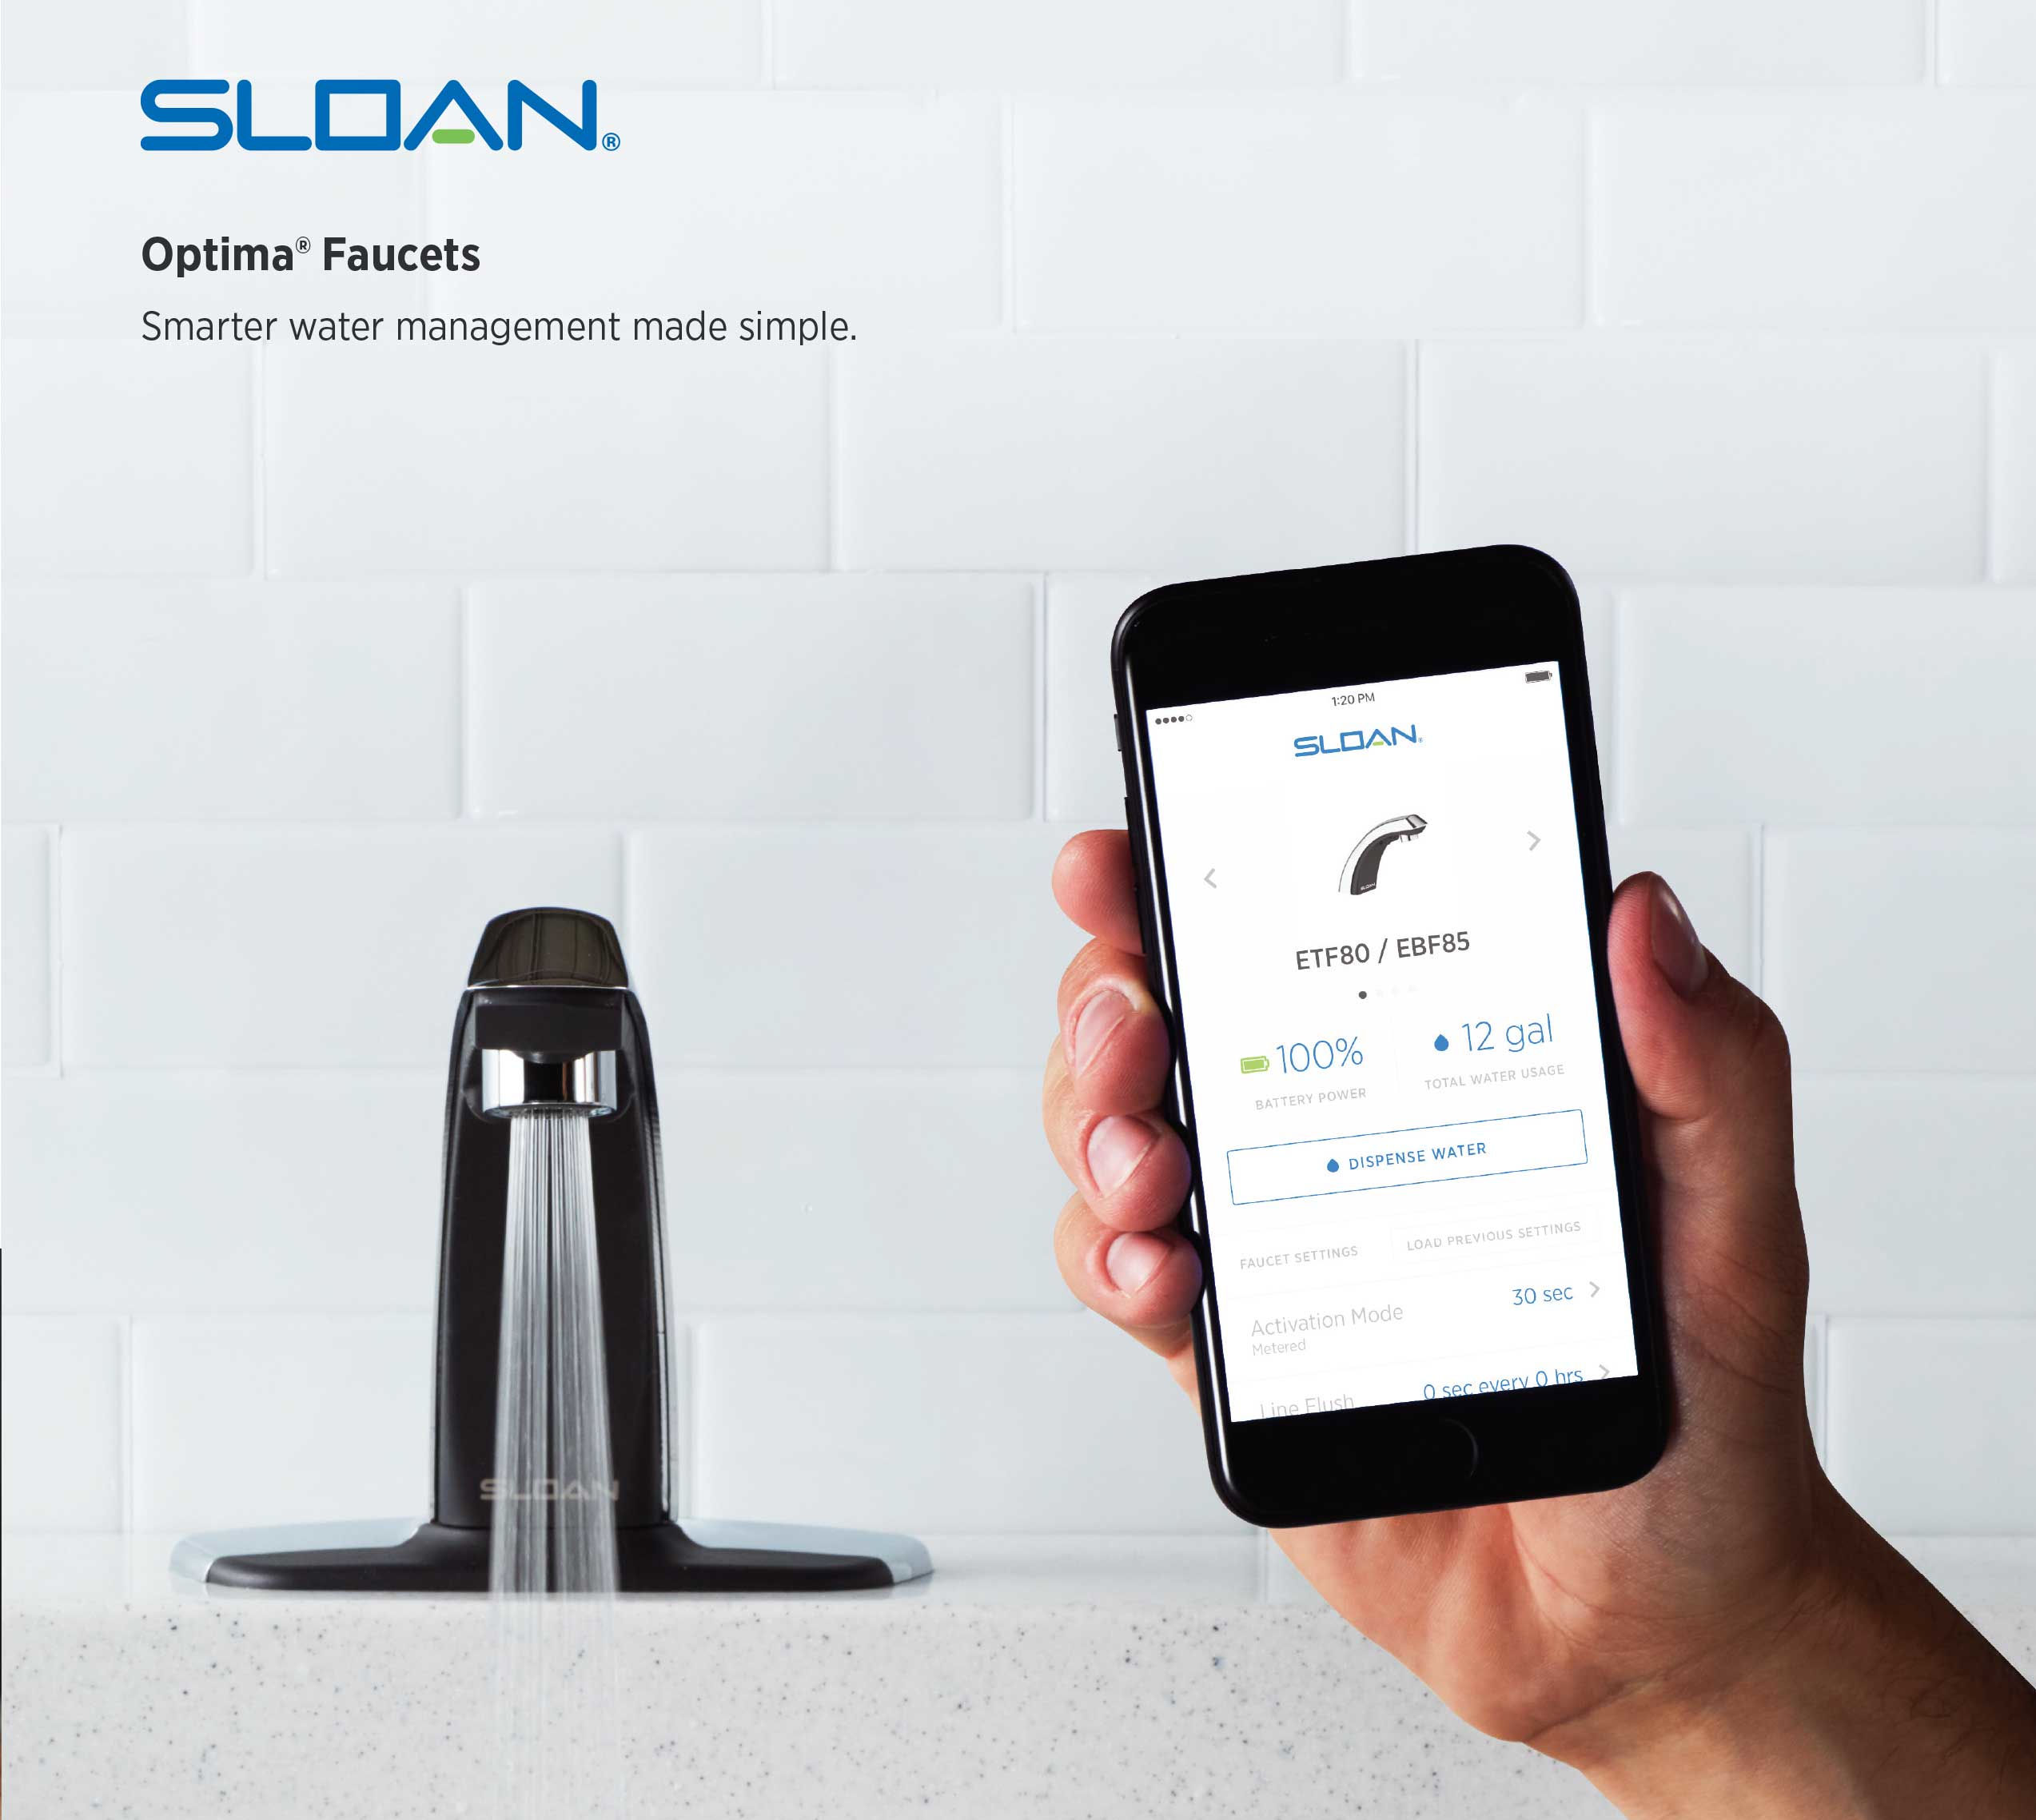 Sloan Optima Faucets